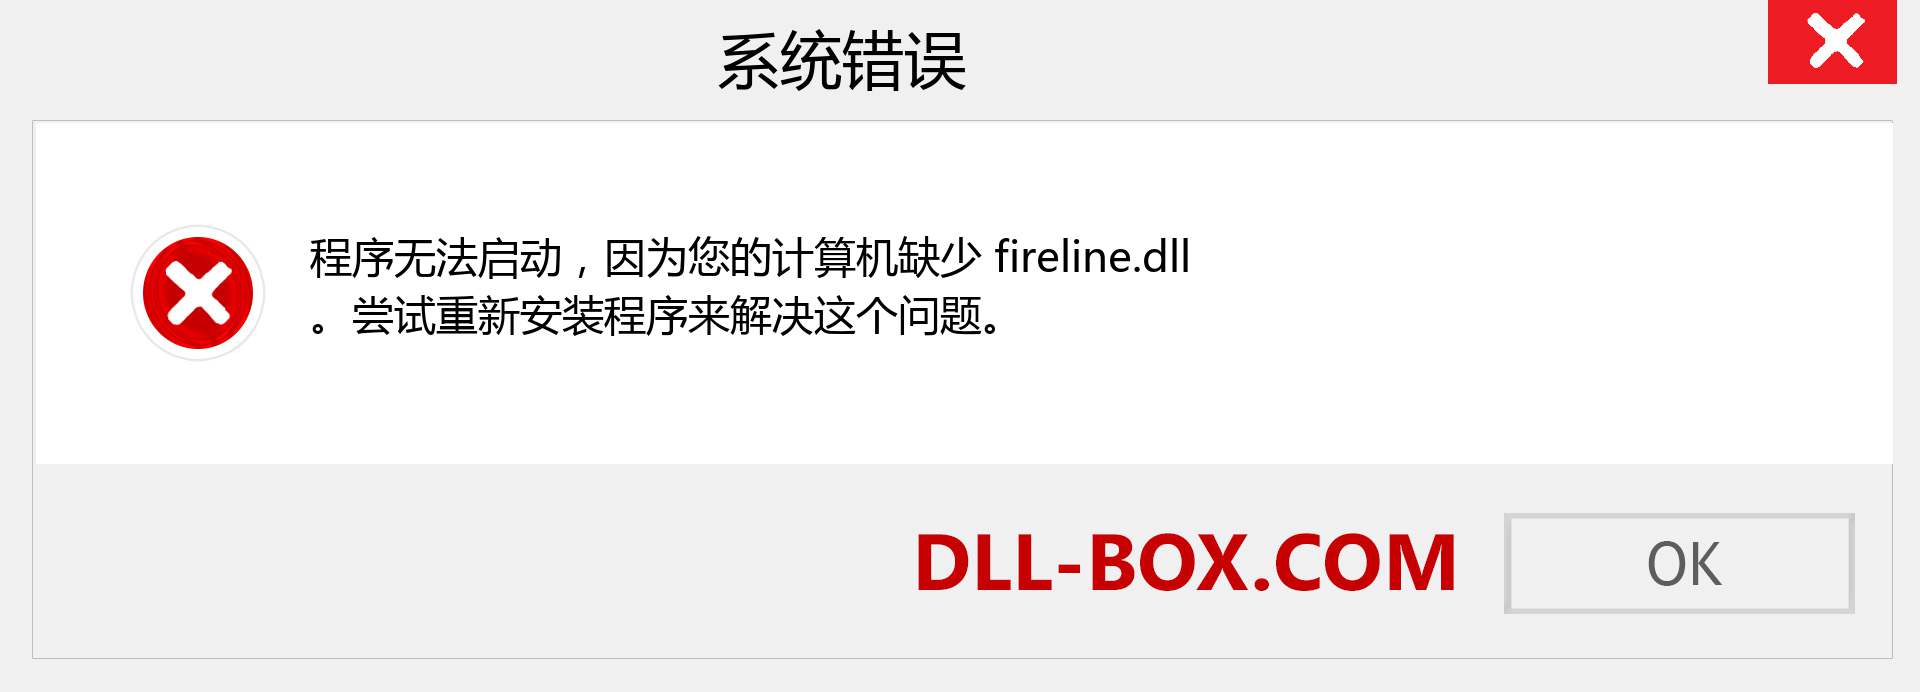 fireline.dll 文件丢失？。 适用于 Windows 7、8、10 的下载 - 修复 Windows、照片、图像上的 fireline dll 丢失错误